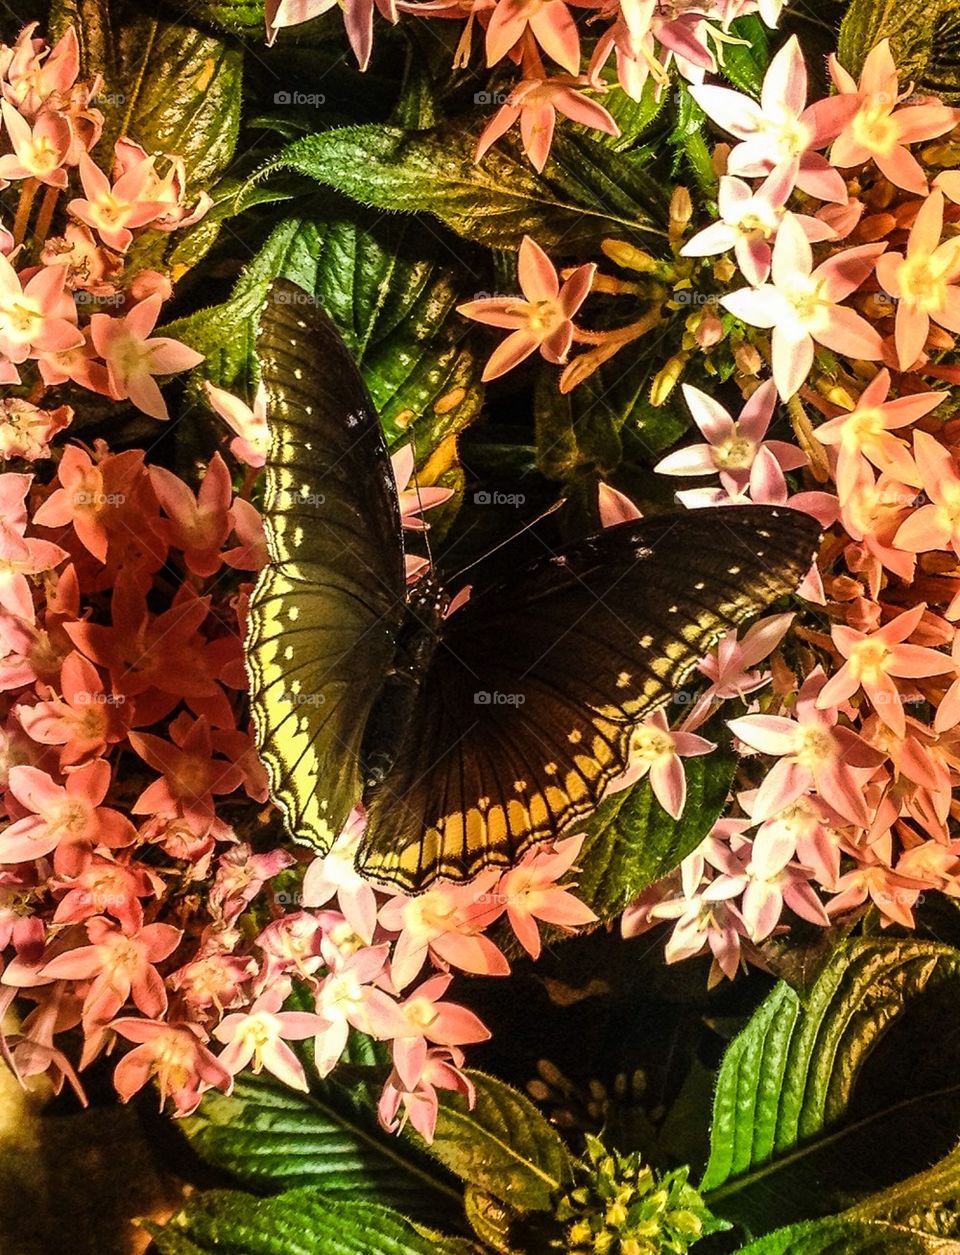 Butterfly in Bloom